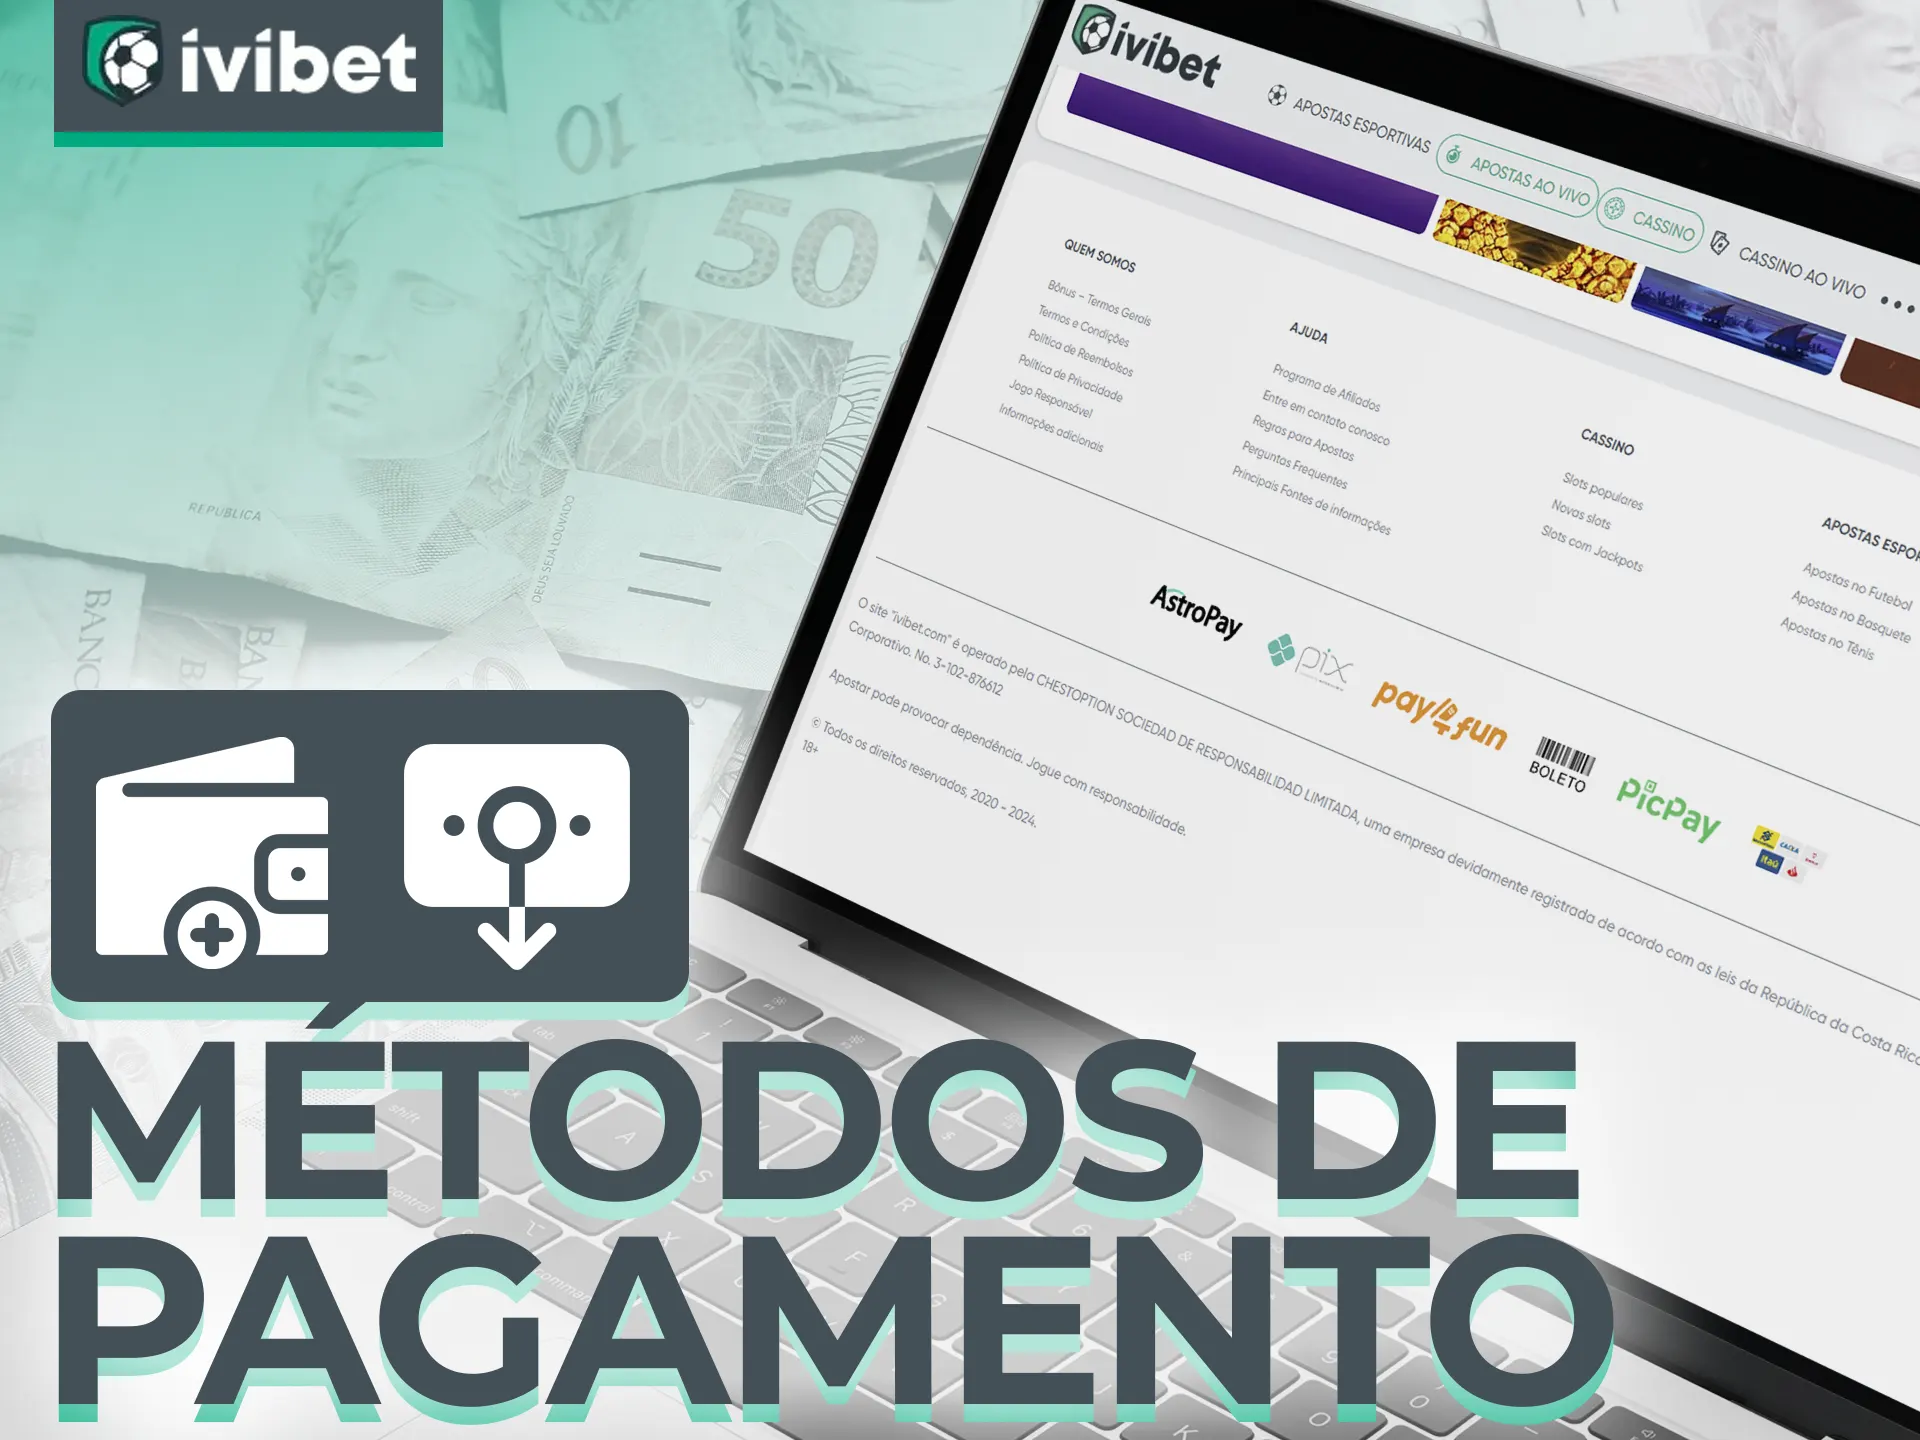 O Ivibet Casino oferece uma grande variedade de métodos de pagamento populares.